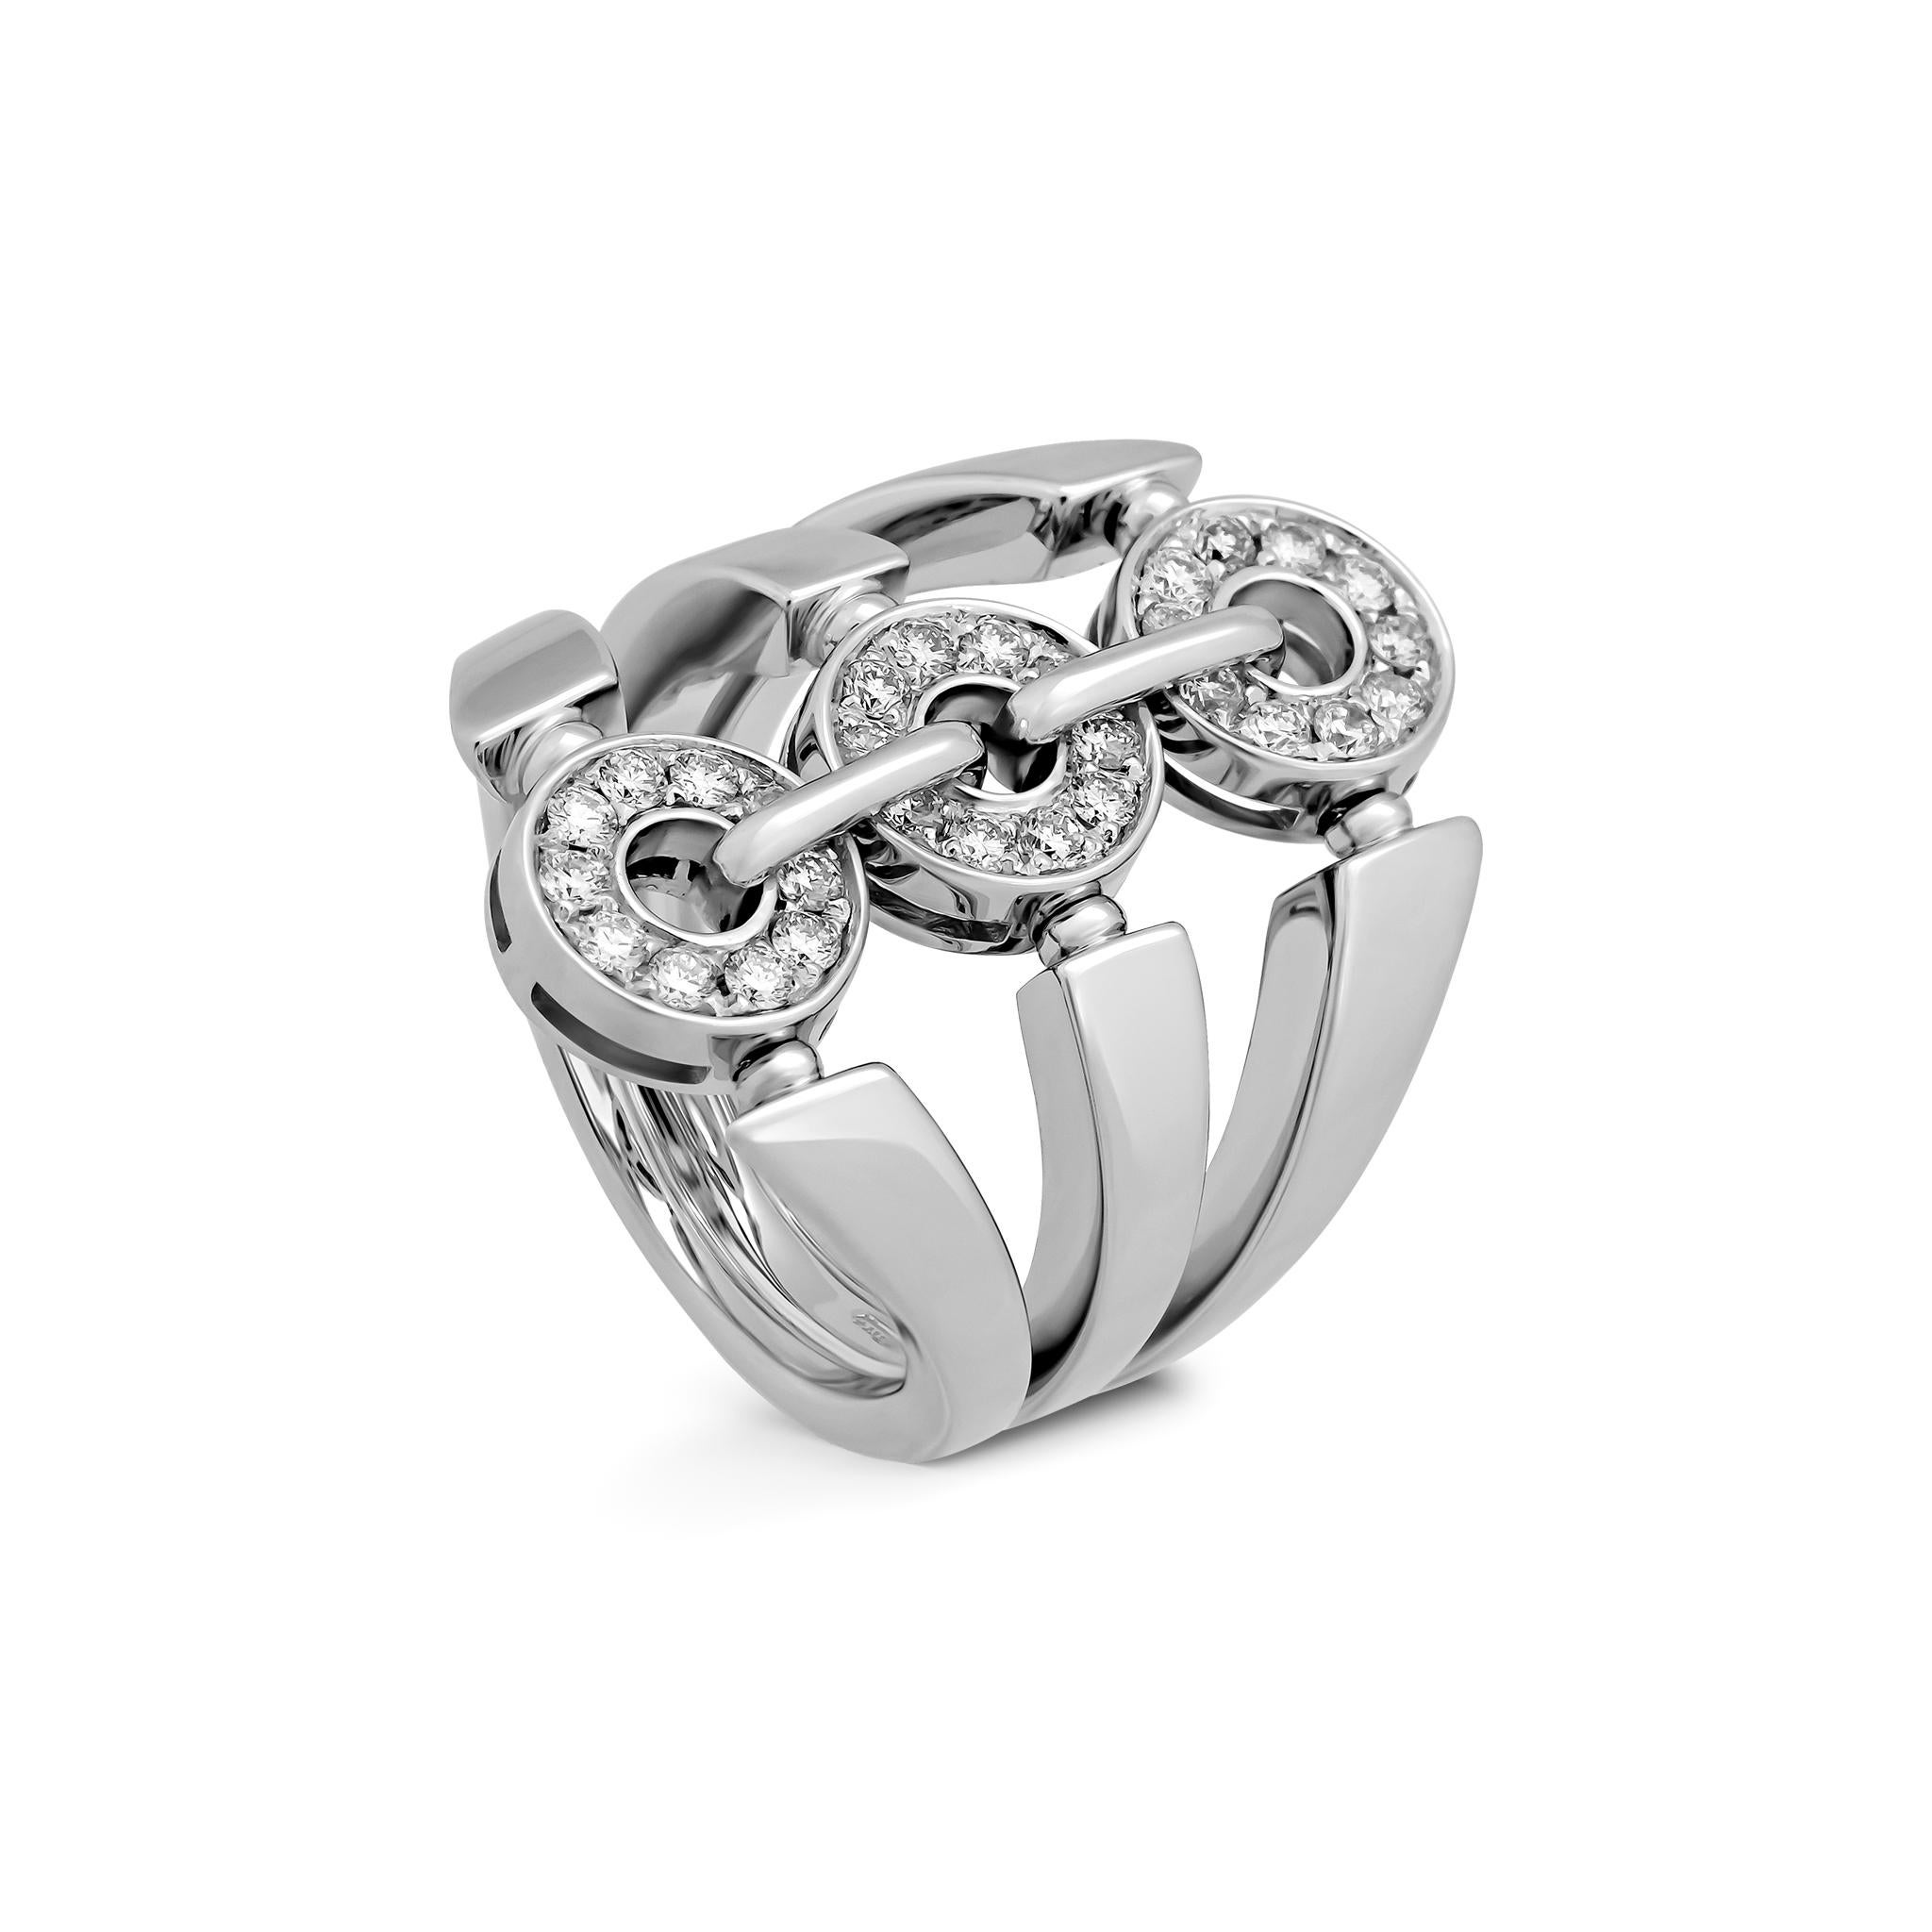 Women's or Men's Bvlgari 18 Karat White Gold Diamond Ring